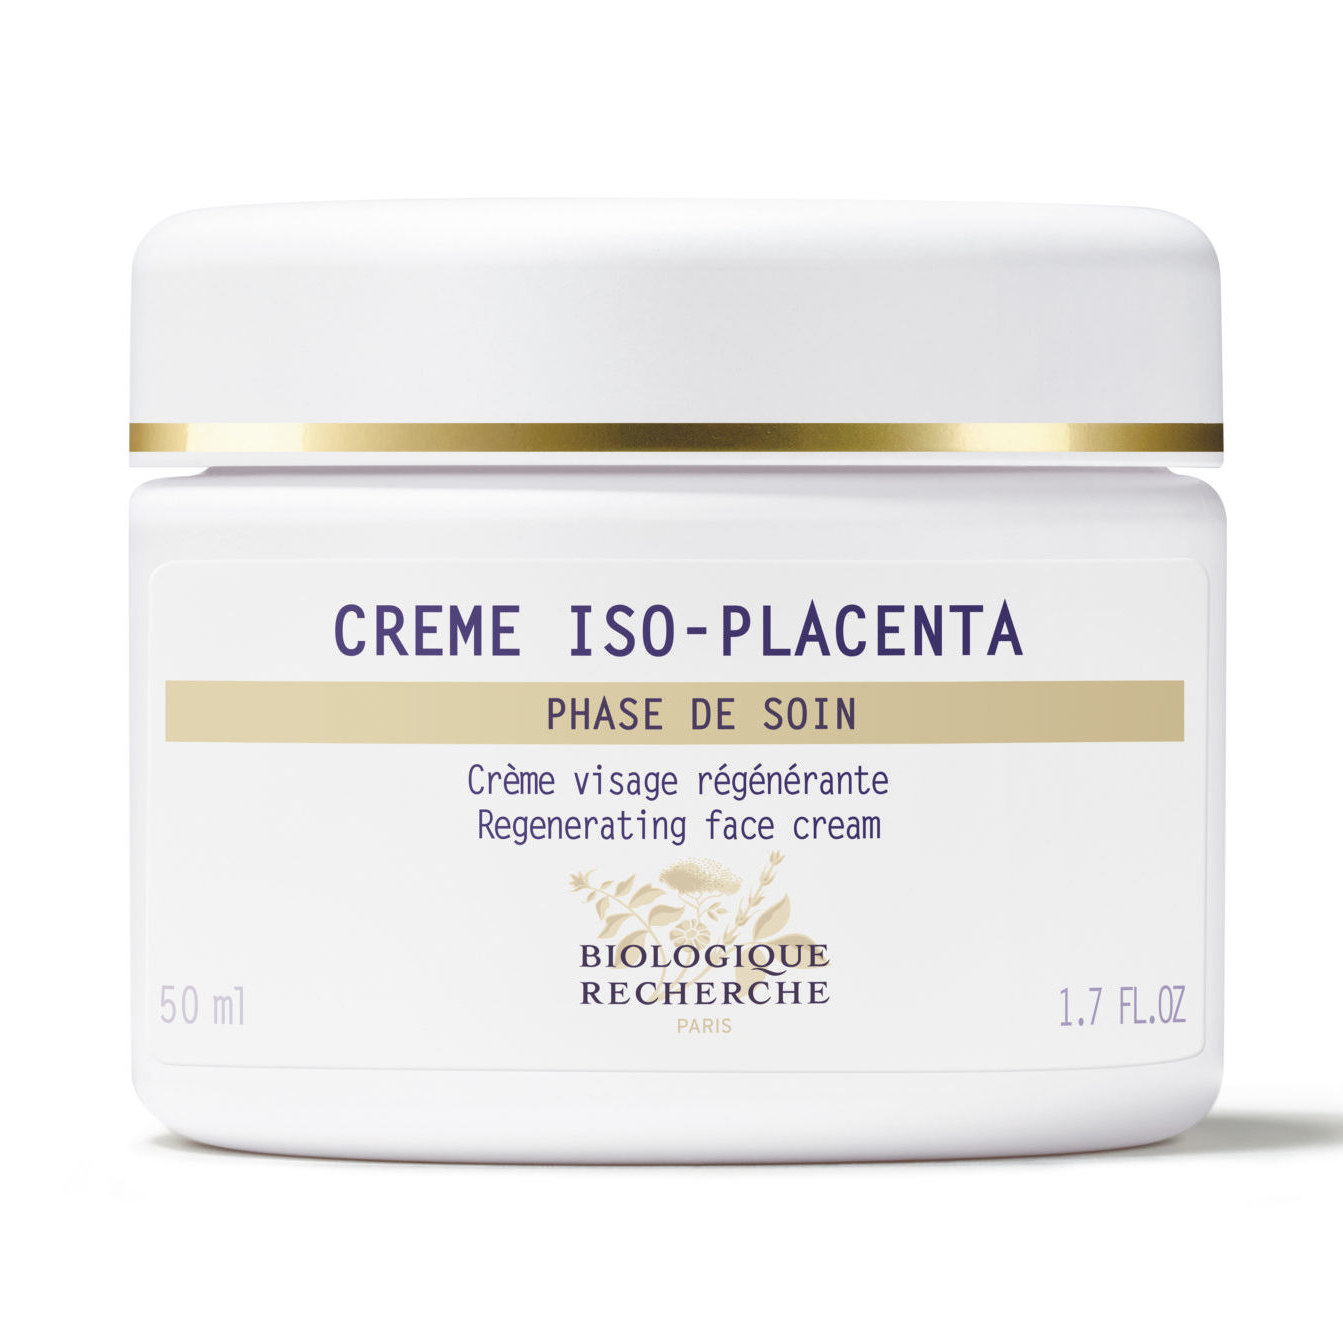 Crème Iso Placenta étui 50ml Biologique Recherche - Brin de Beauté Annecy